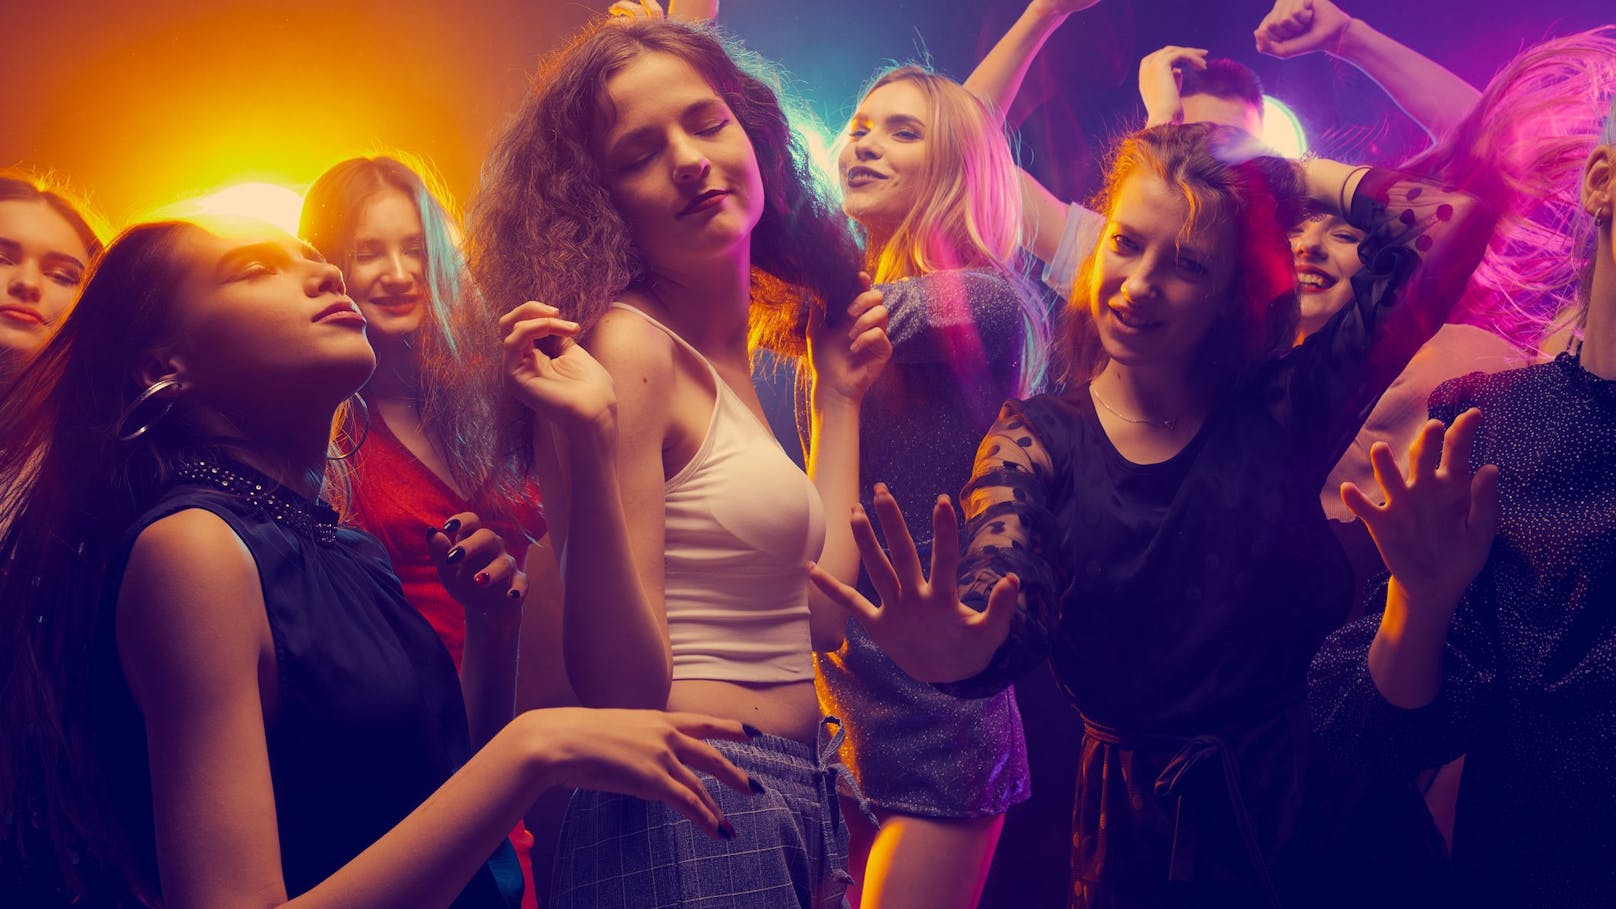 Kids in der Disco: Aufregung um Party für 12-Jährige